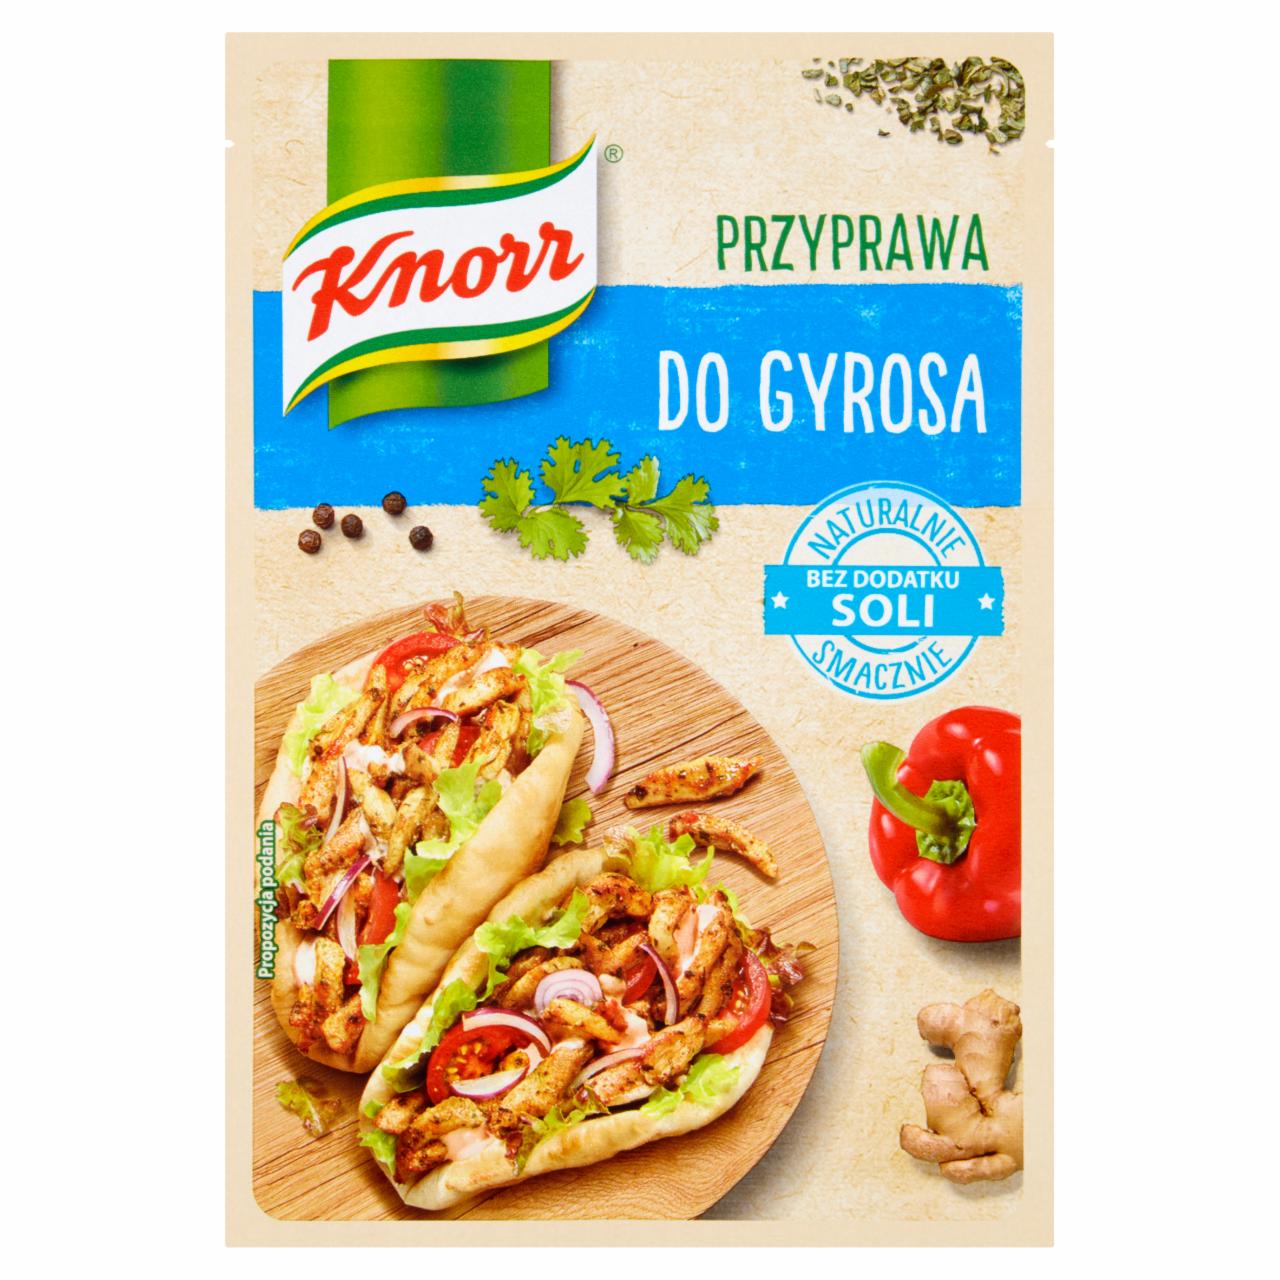 Zdjęcia - Knorr Przyprawa do gyrosa 18 g